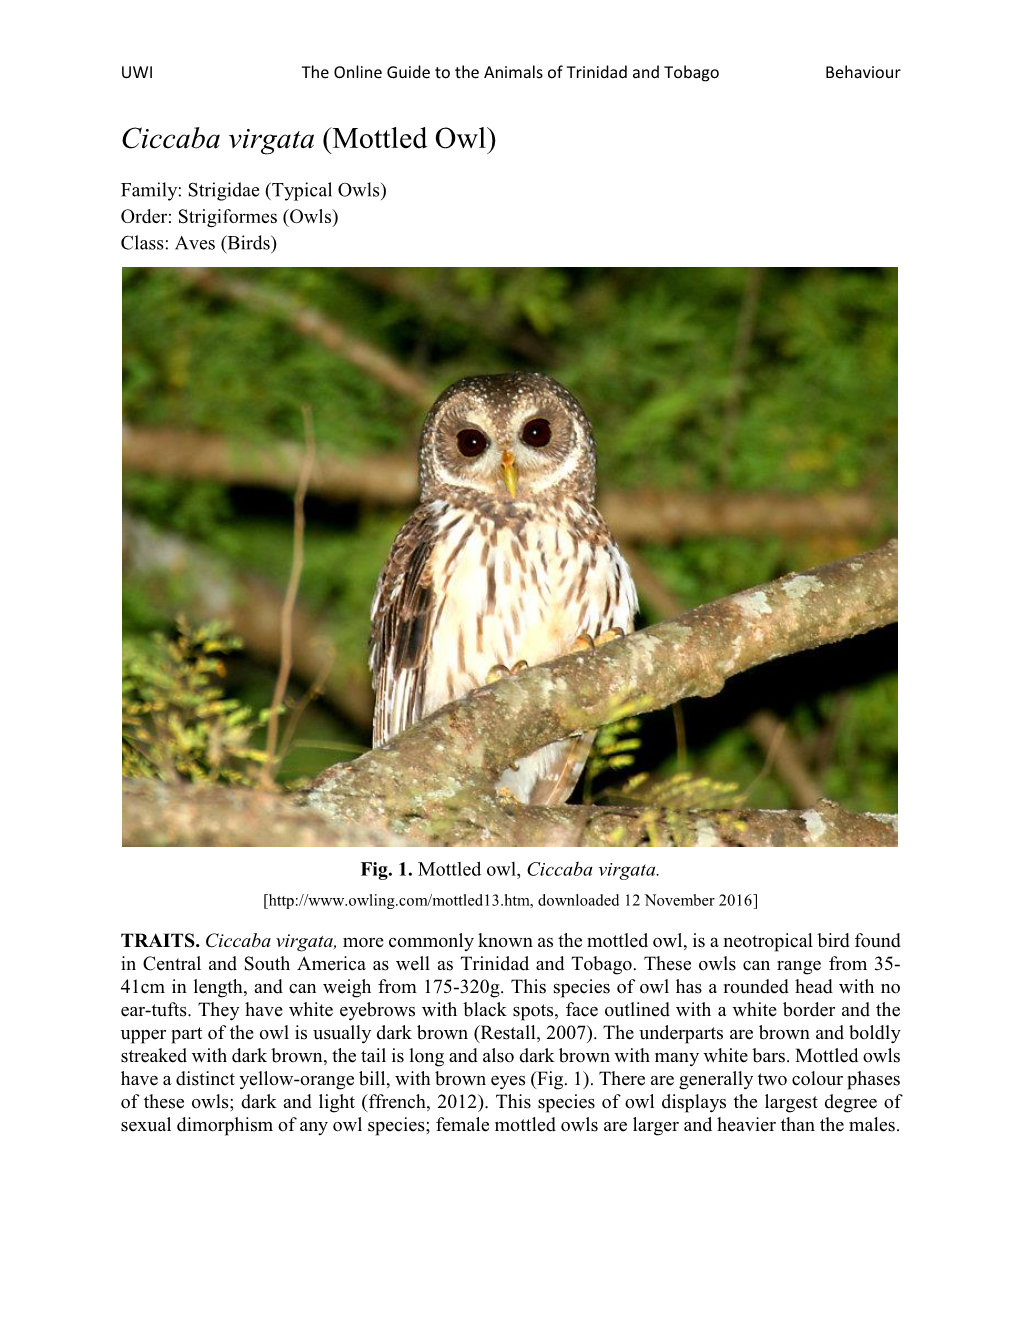 Ciccaba Virgata (Mottled Owl)